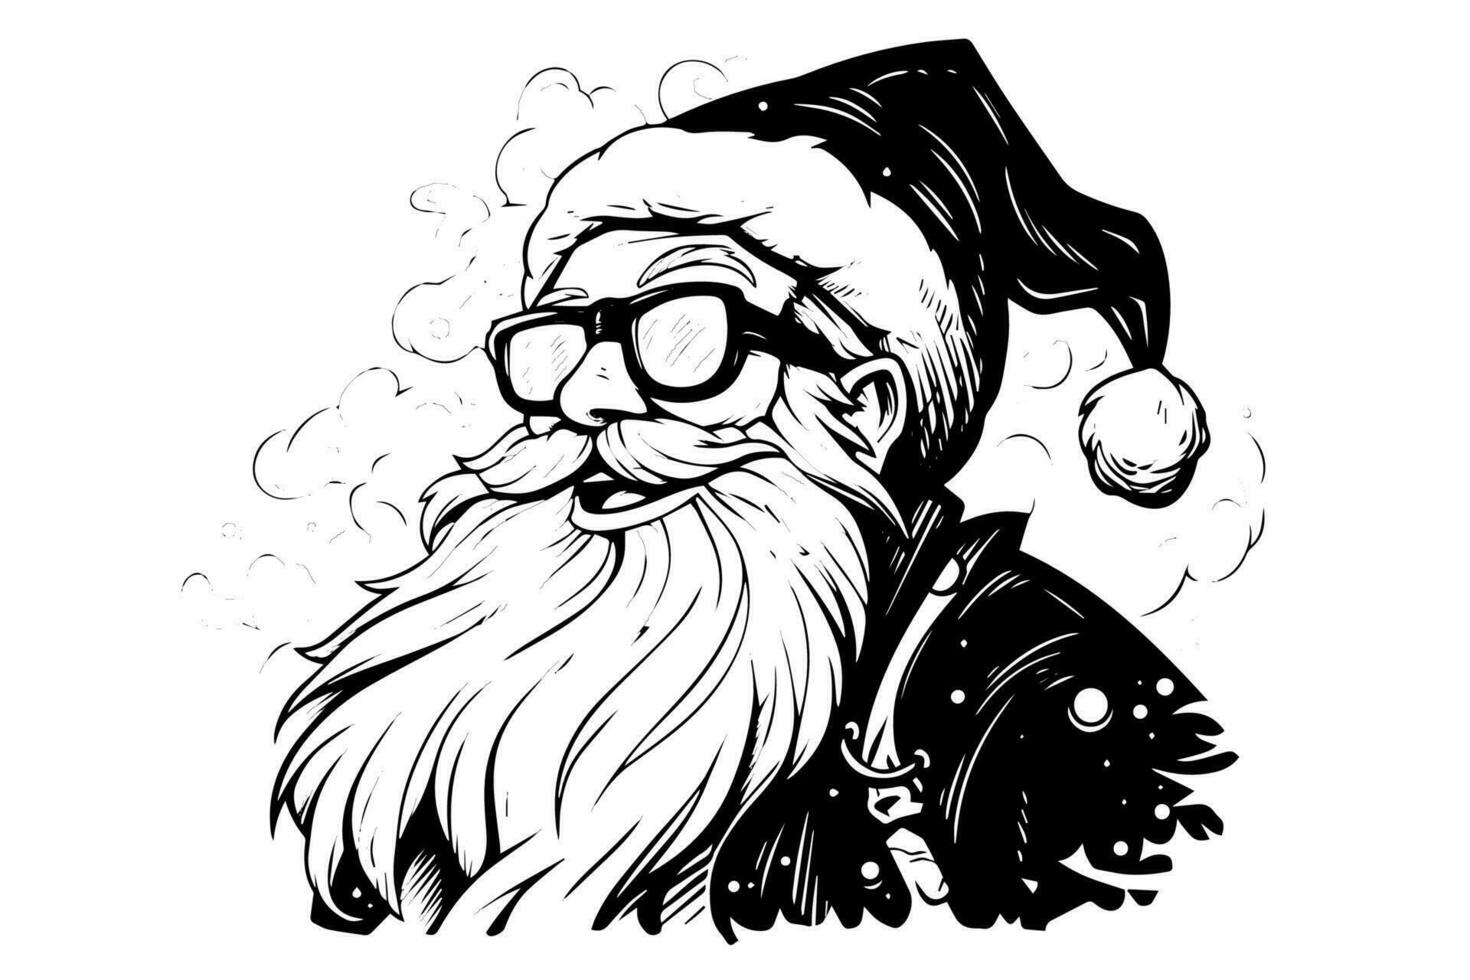 Papa Noel claus cabeza en un sombrero bosquejo mano dibujado en grabado estilo vector ilustración.